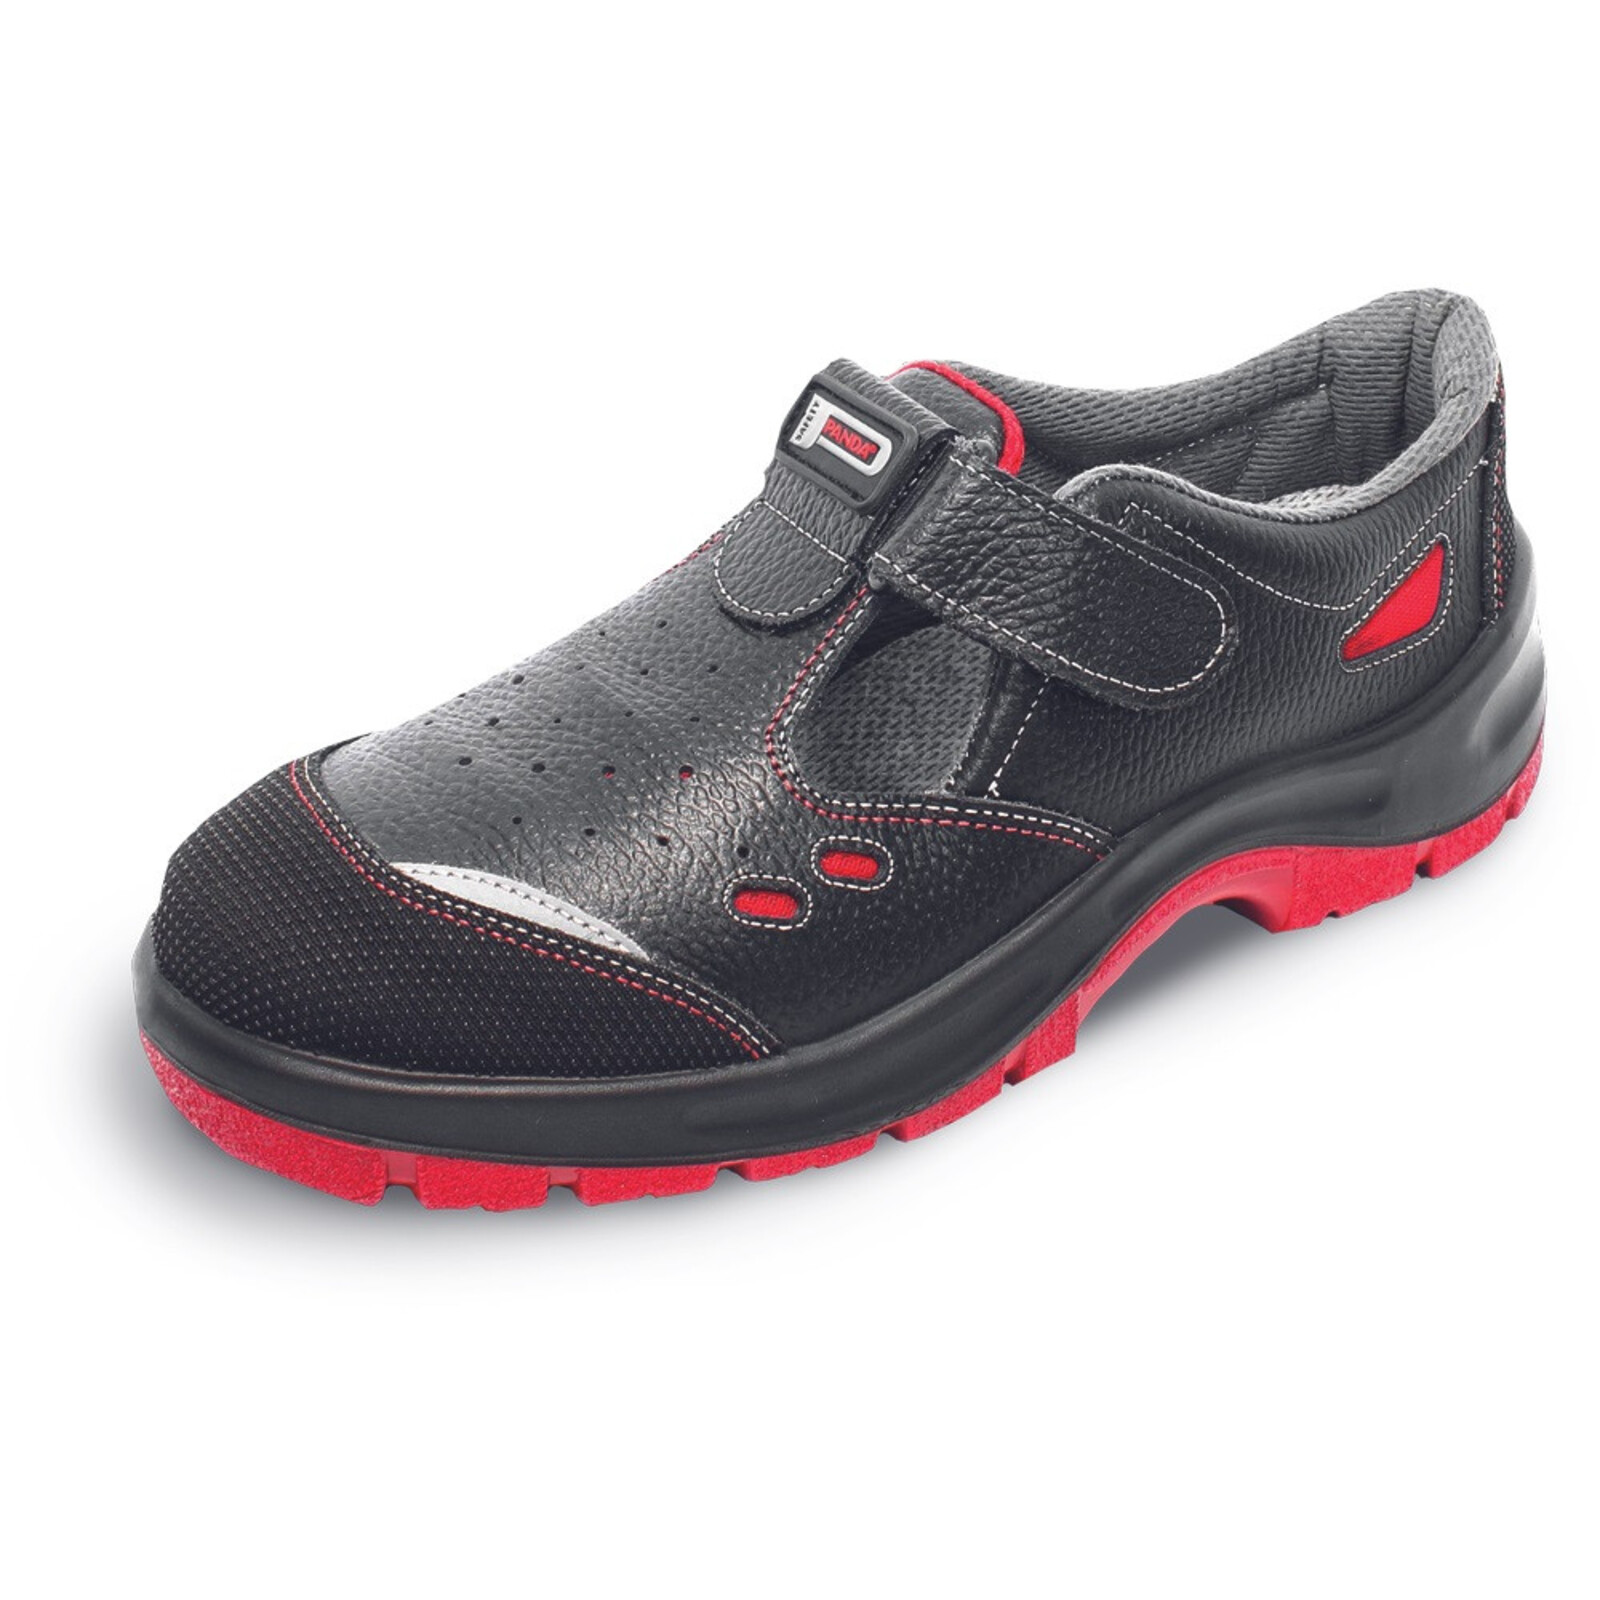 Bezpečnostné sandále Panda Strong Nuovo Topolino MF S1 SRC - veľkosť: 43, farba: čierna/červená